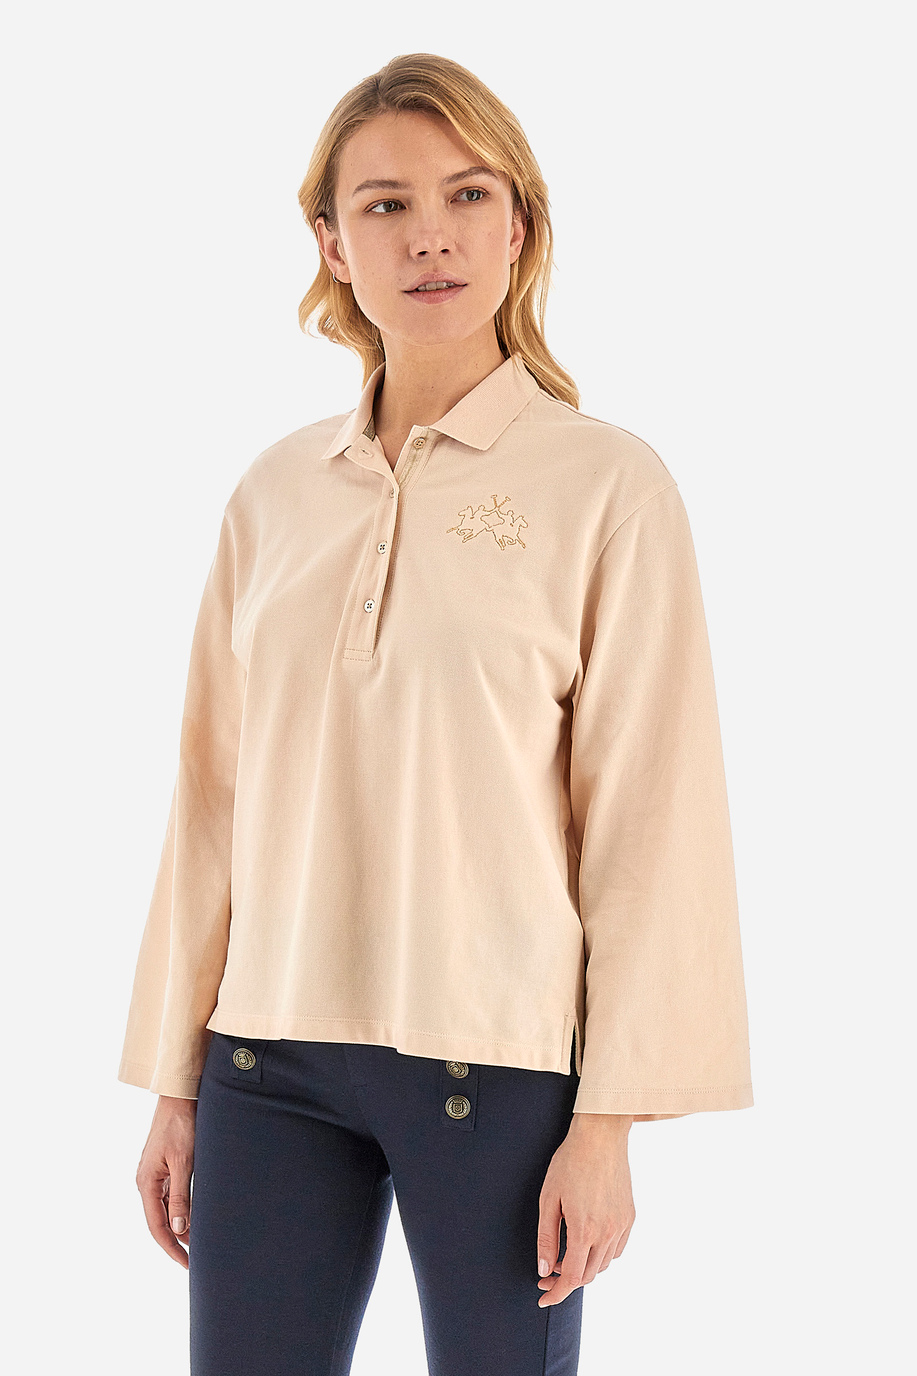 Damen -Poloshirt regular fit - Welch - Aussergewöhnliche Geschenke für sie | La Martina - Official Online Shop